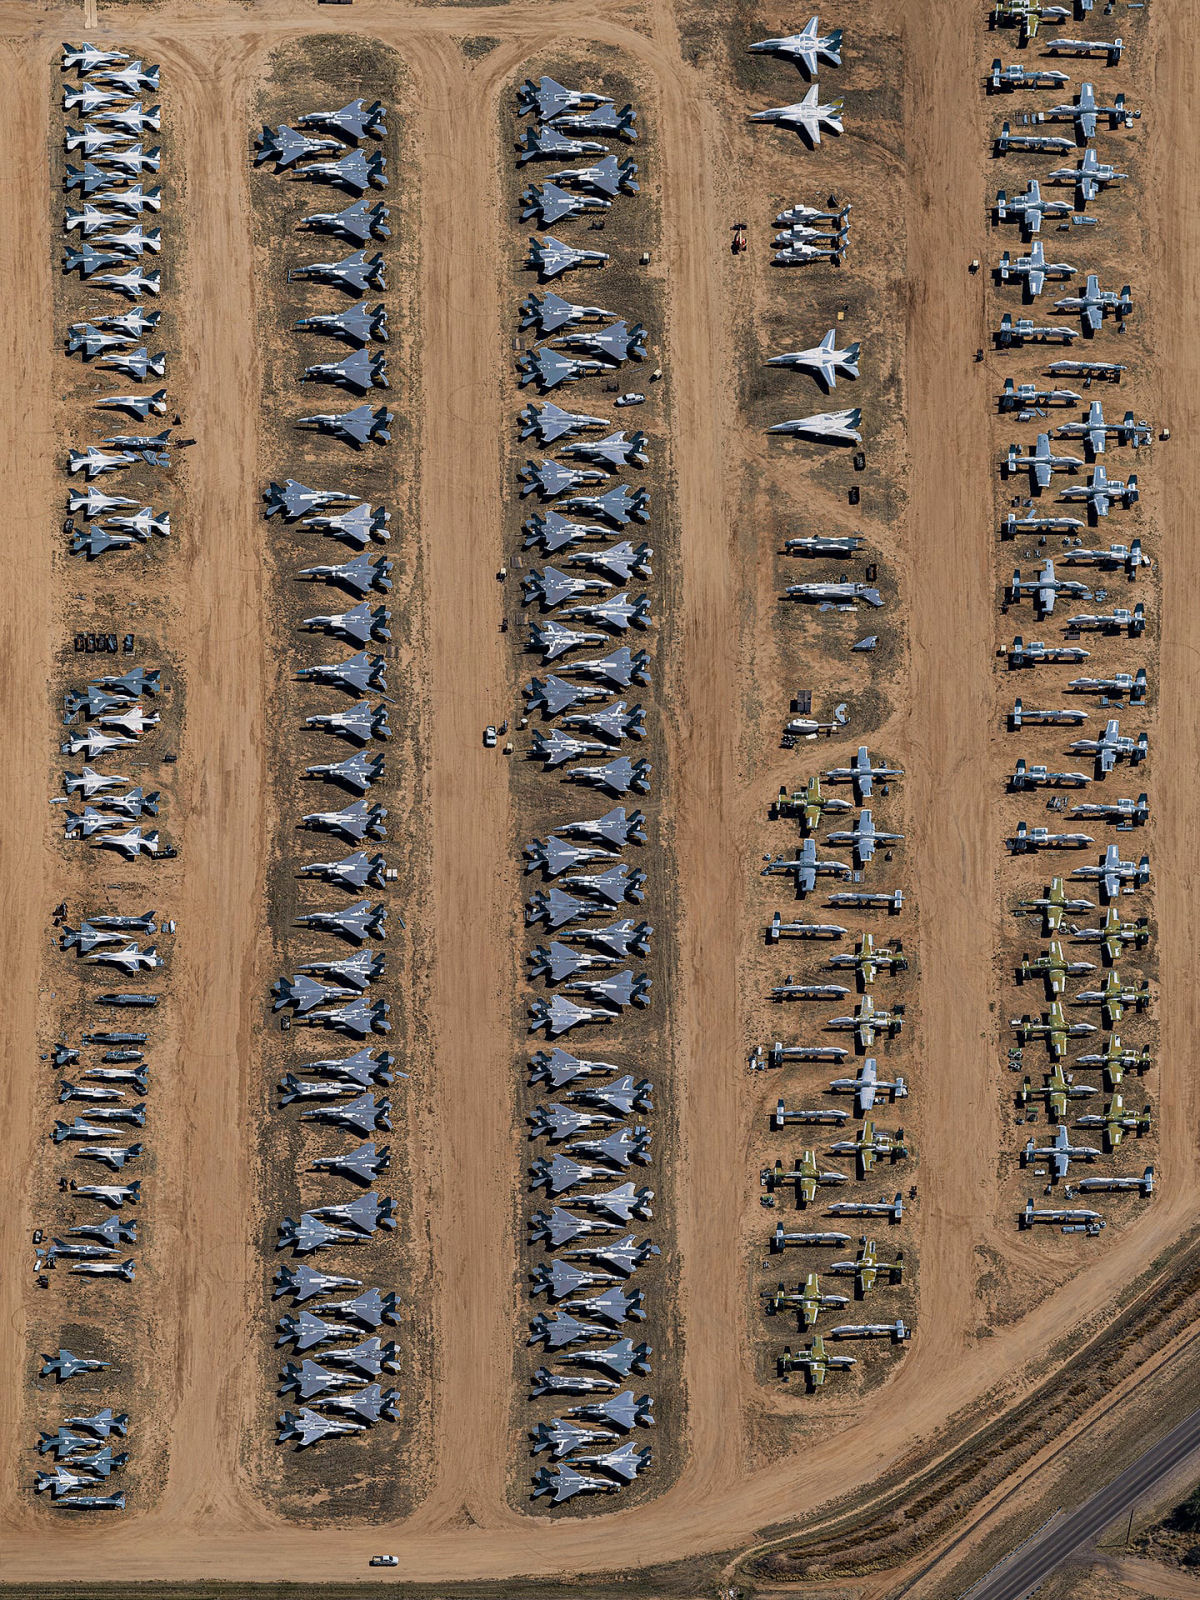 Fotos aéreas capturam o maior cemitério de aeronaves do mundo